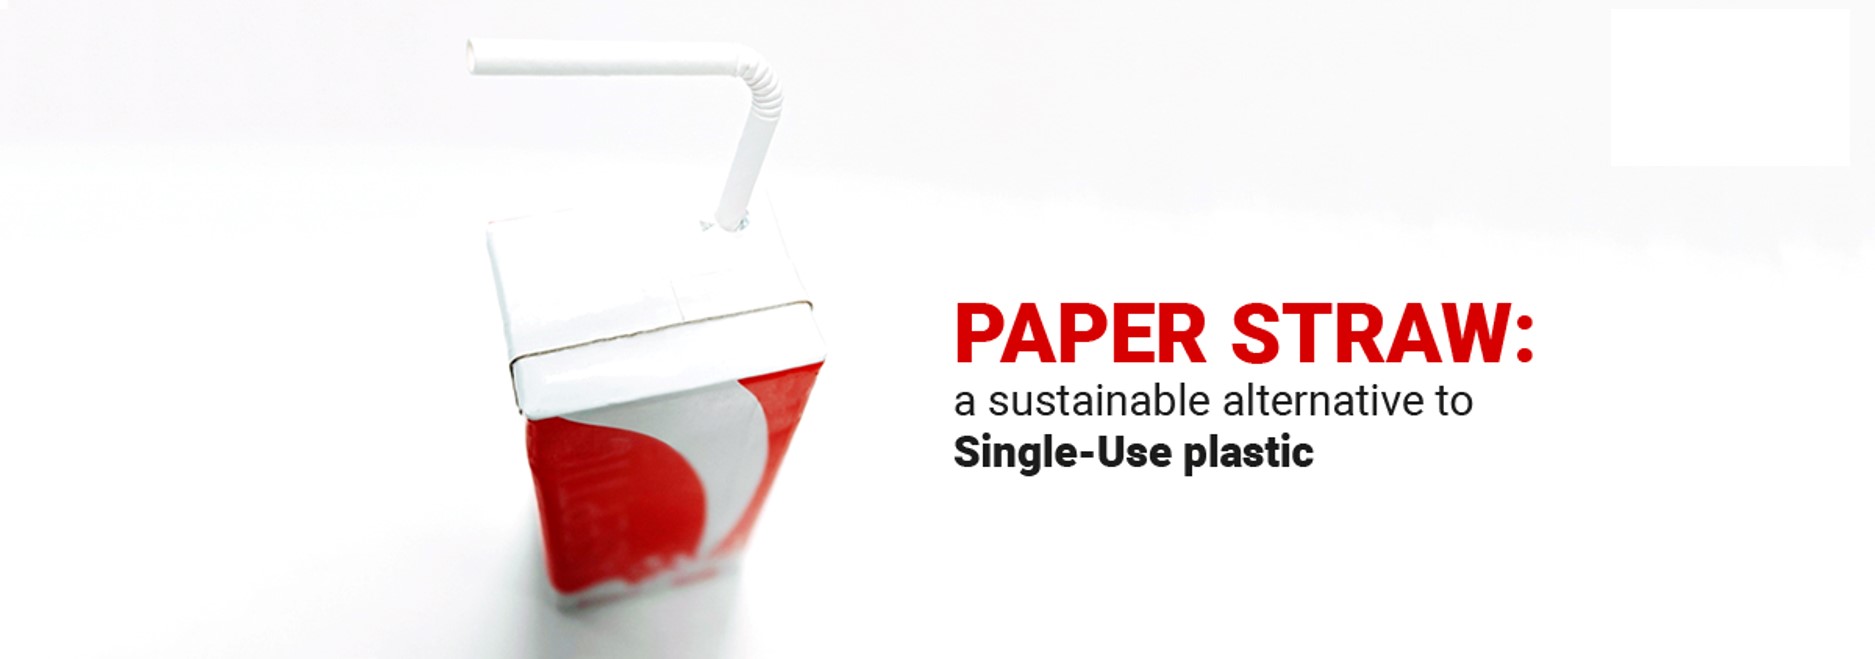 In che modo le cannucce di carta aiutano a ridurre i rifiuti e la plastica monouso. Un focus sulle cannucce di carta IPI.